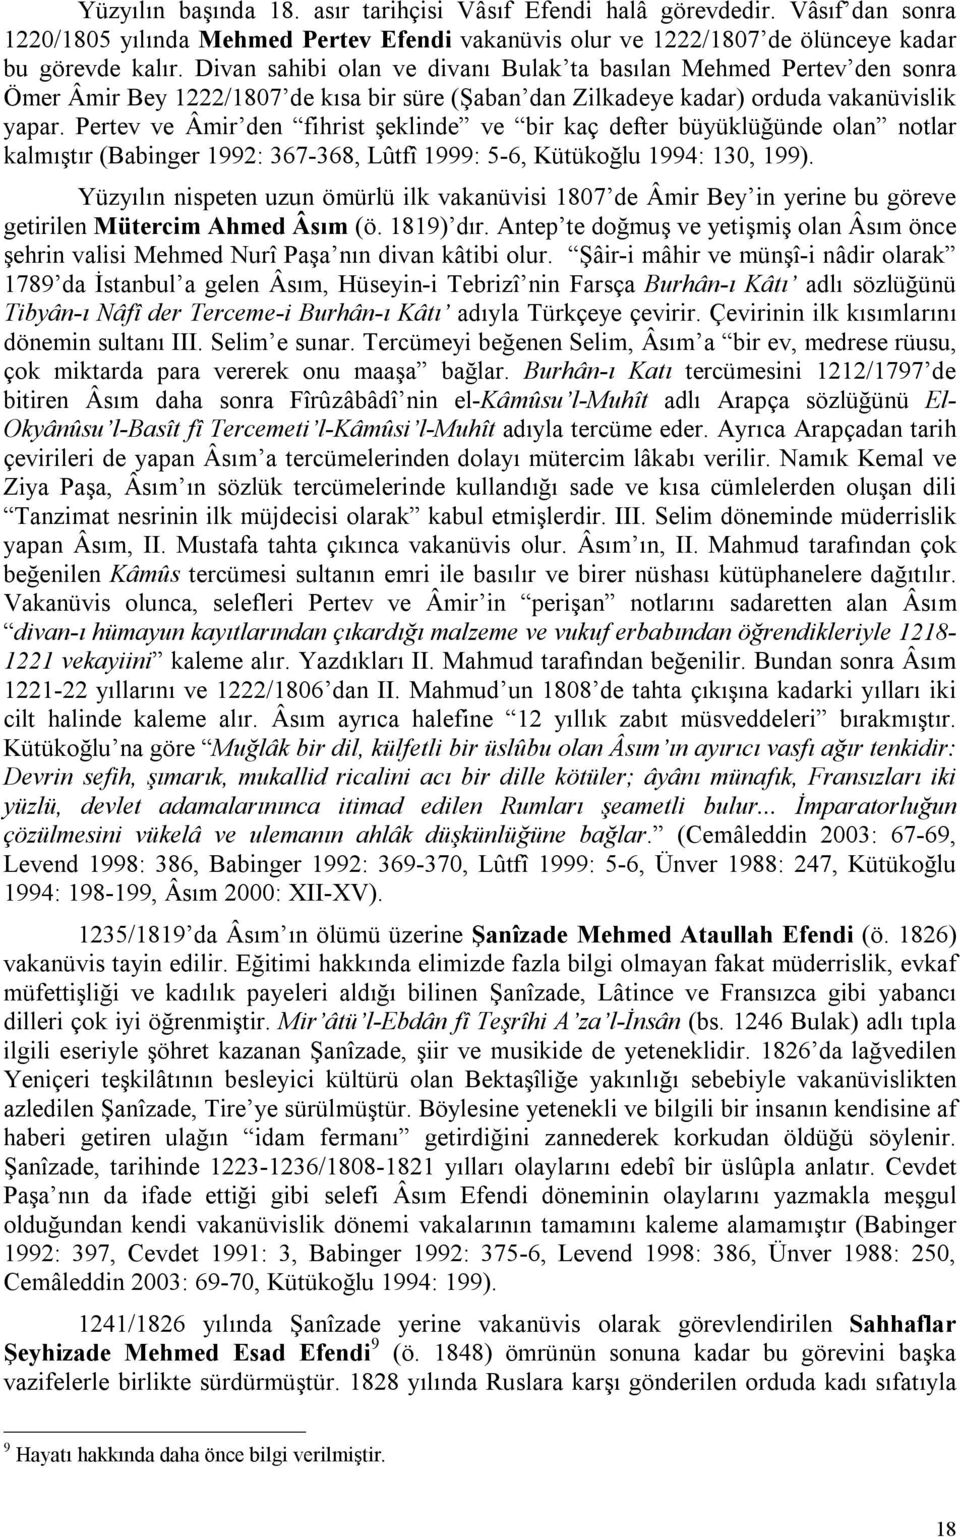 Pertev ve Âmir den fihrist şeklinde ve bir kaç defter büyüklüğünde olan notlar kalmıştır (Babinger 1992: 367-368, Lûtfî 1999: 5-6, Kütükoğlu 1994: 130, 199).